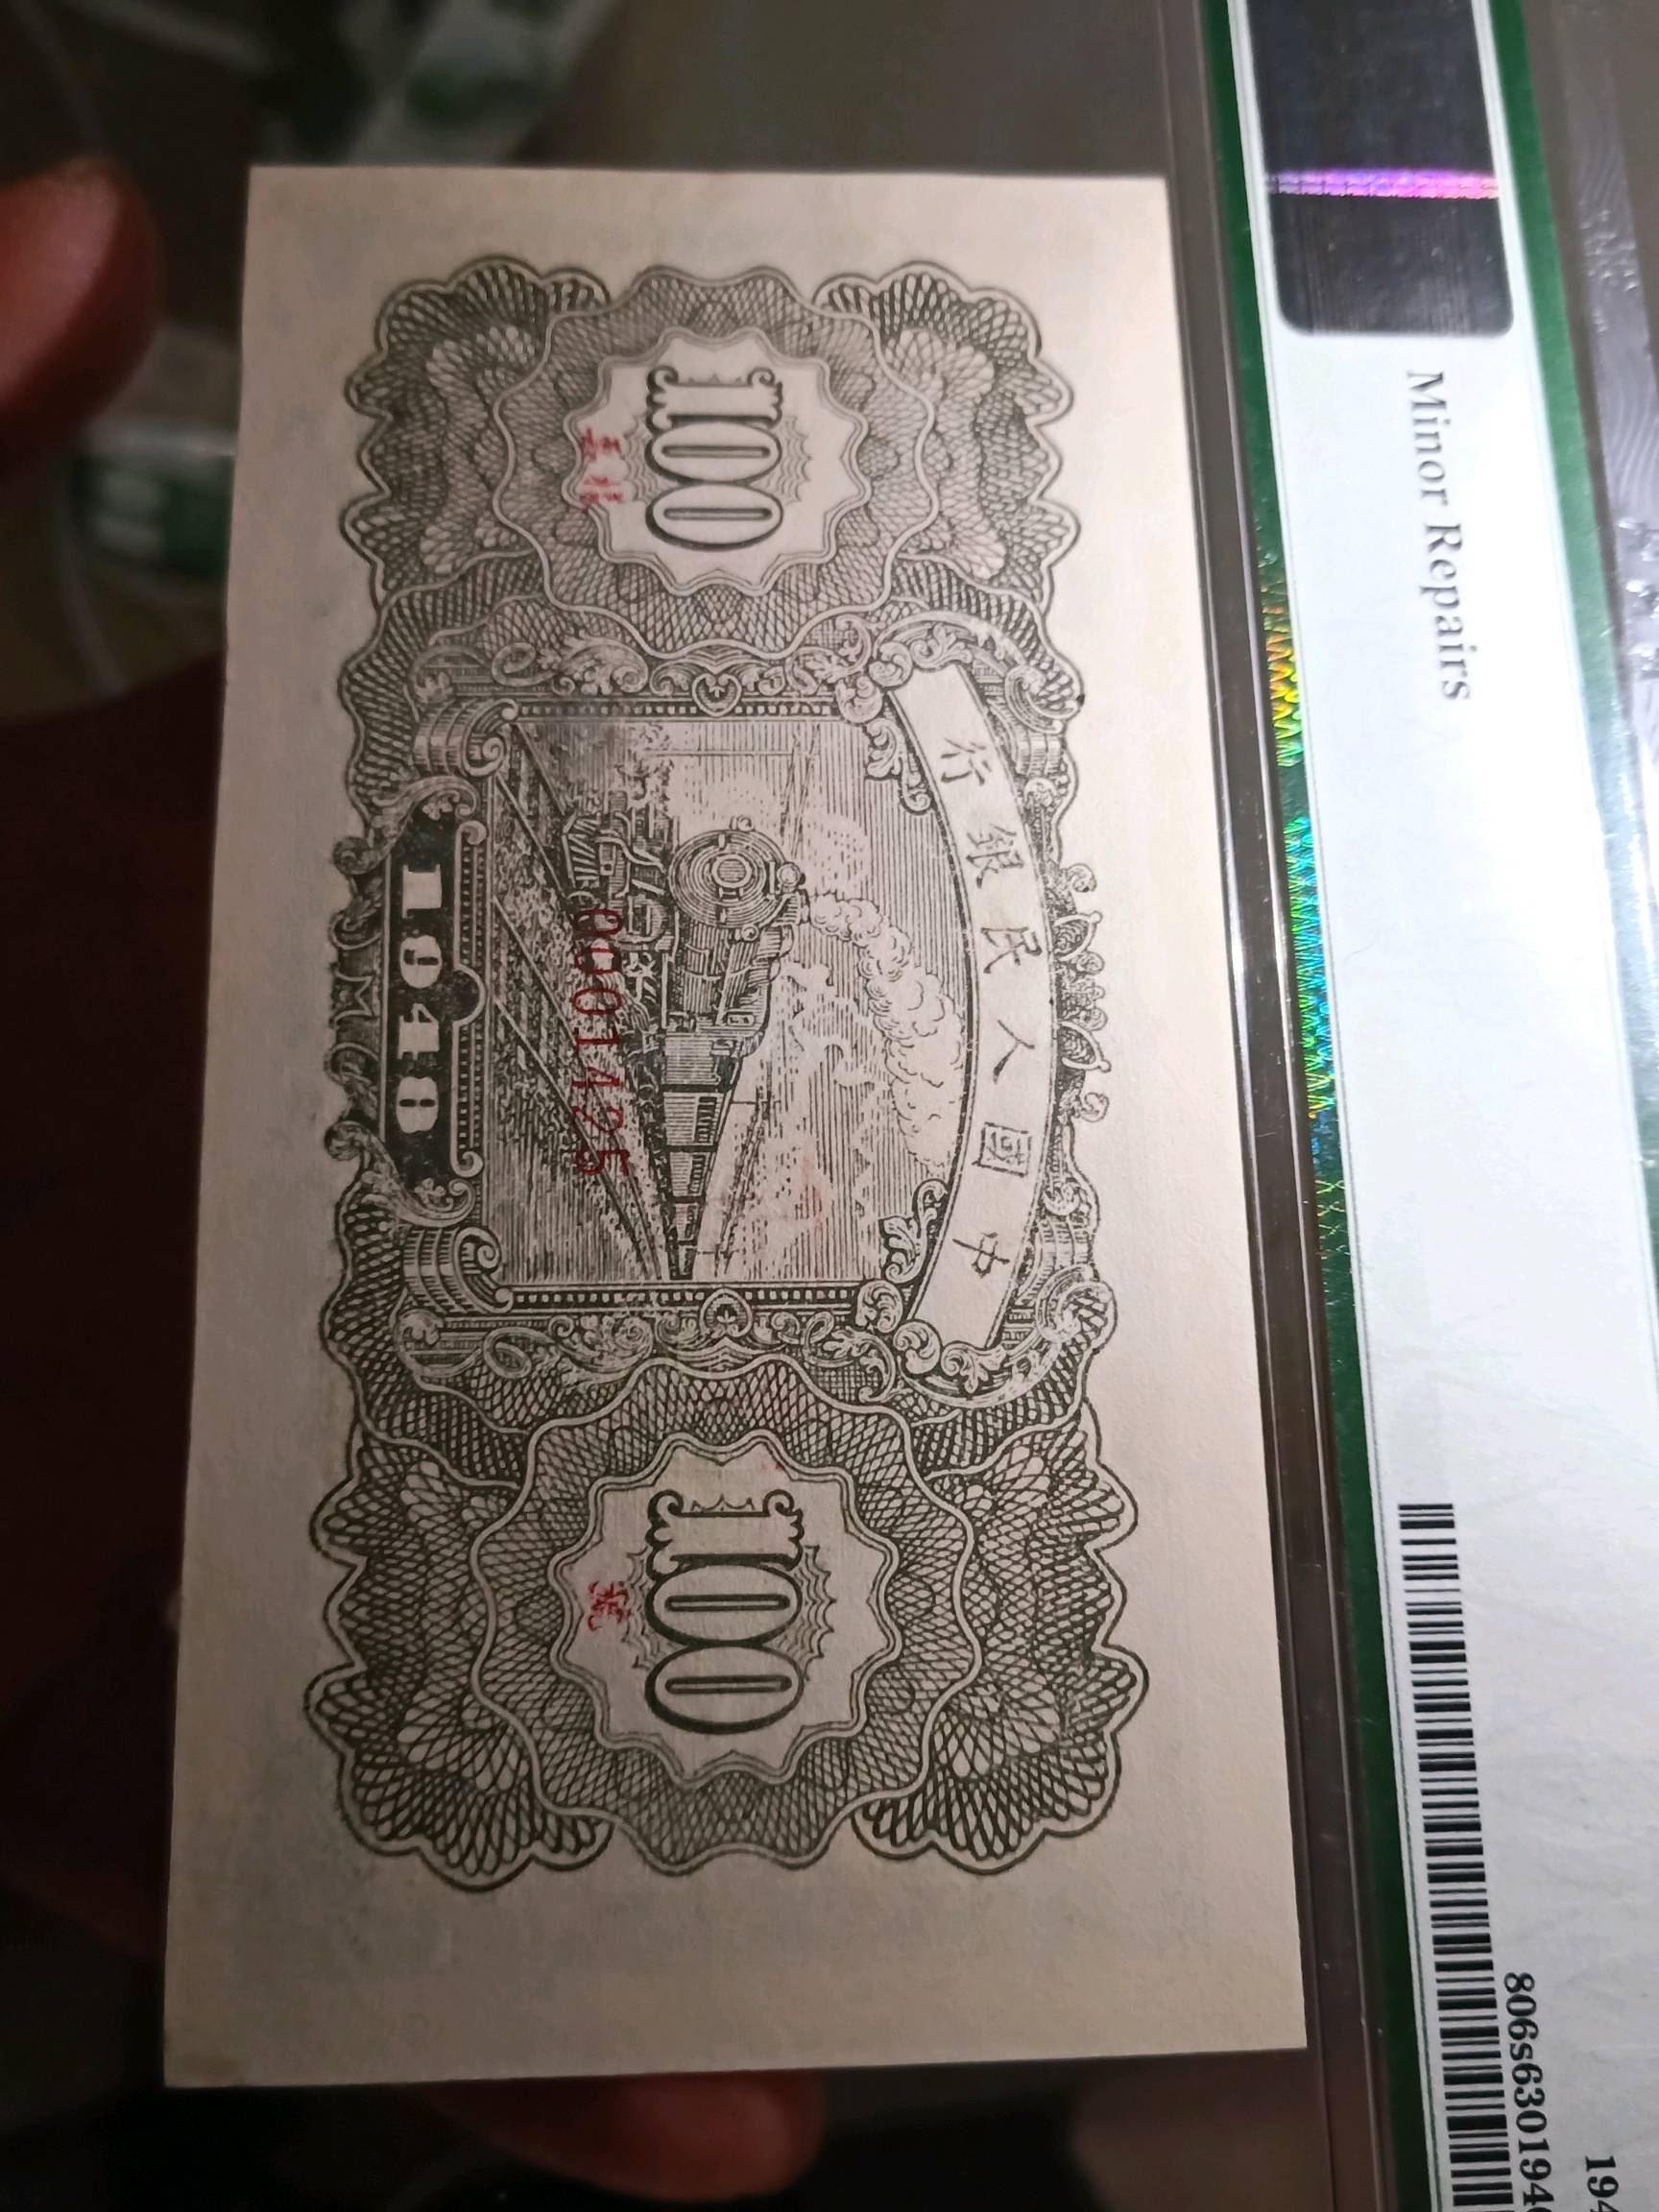 第一套人民币万寿山图片